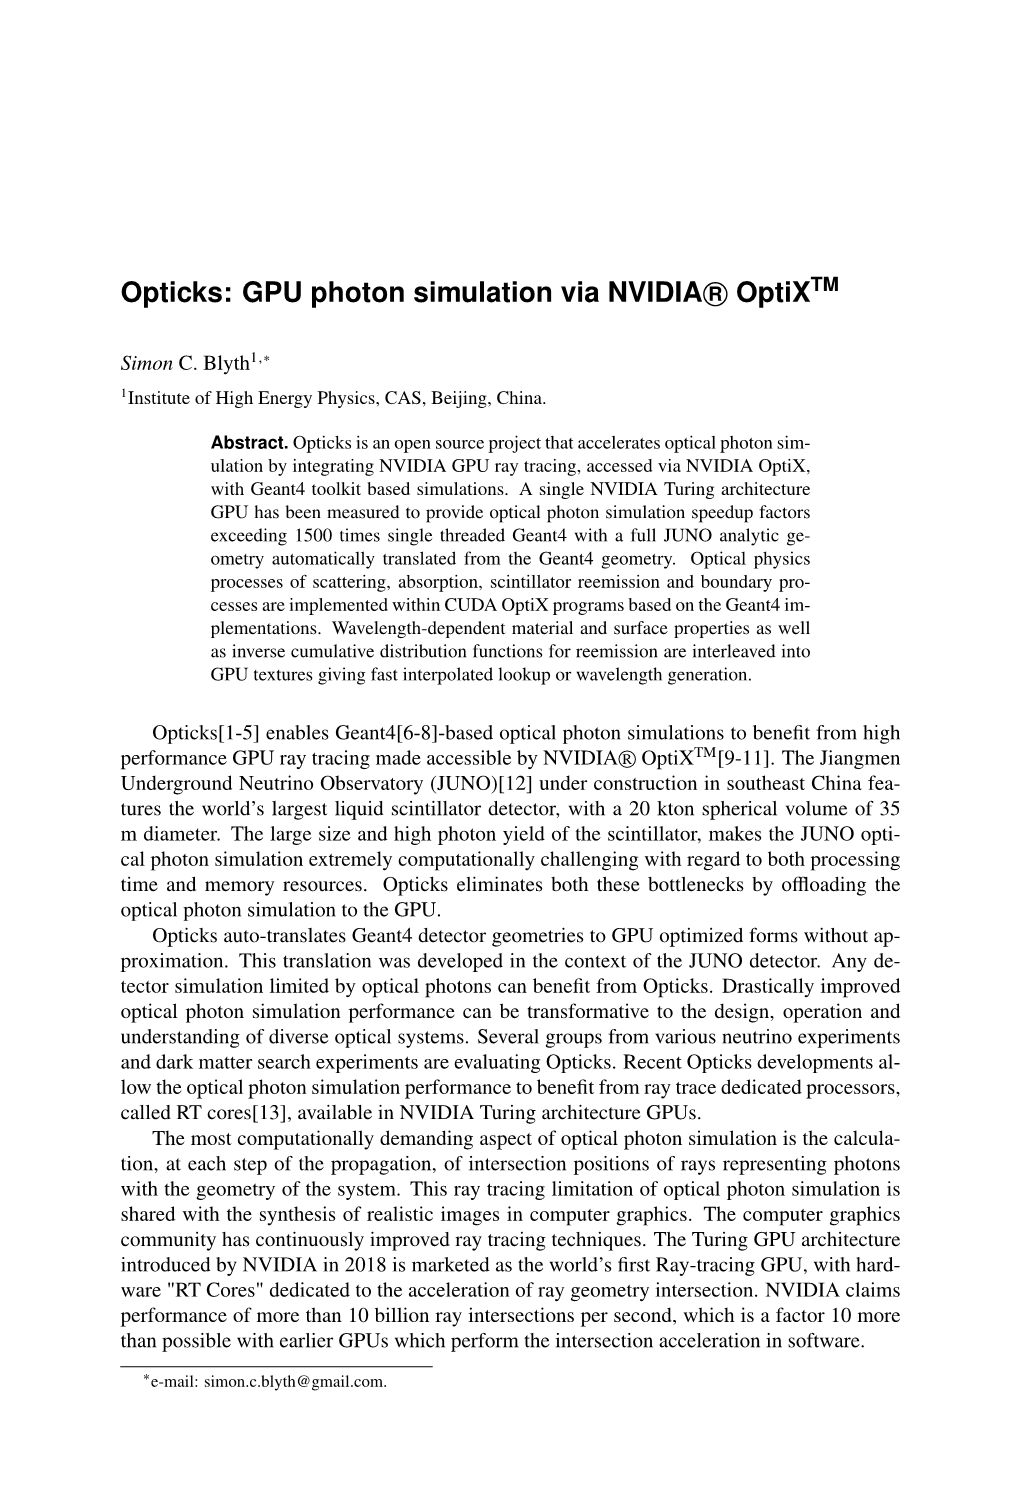 Opticks: GPU Photon Simulation Via NVIDIA R Optixtm